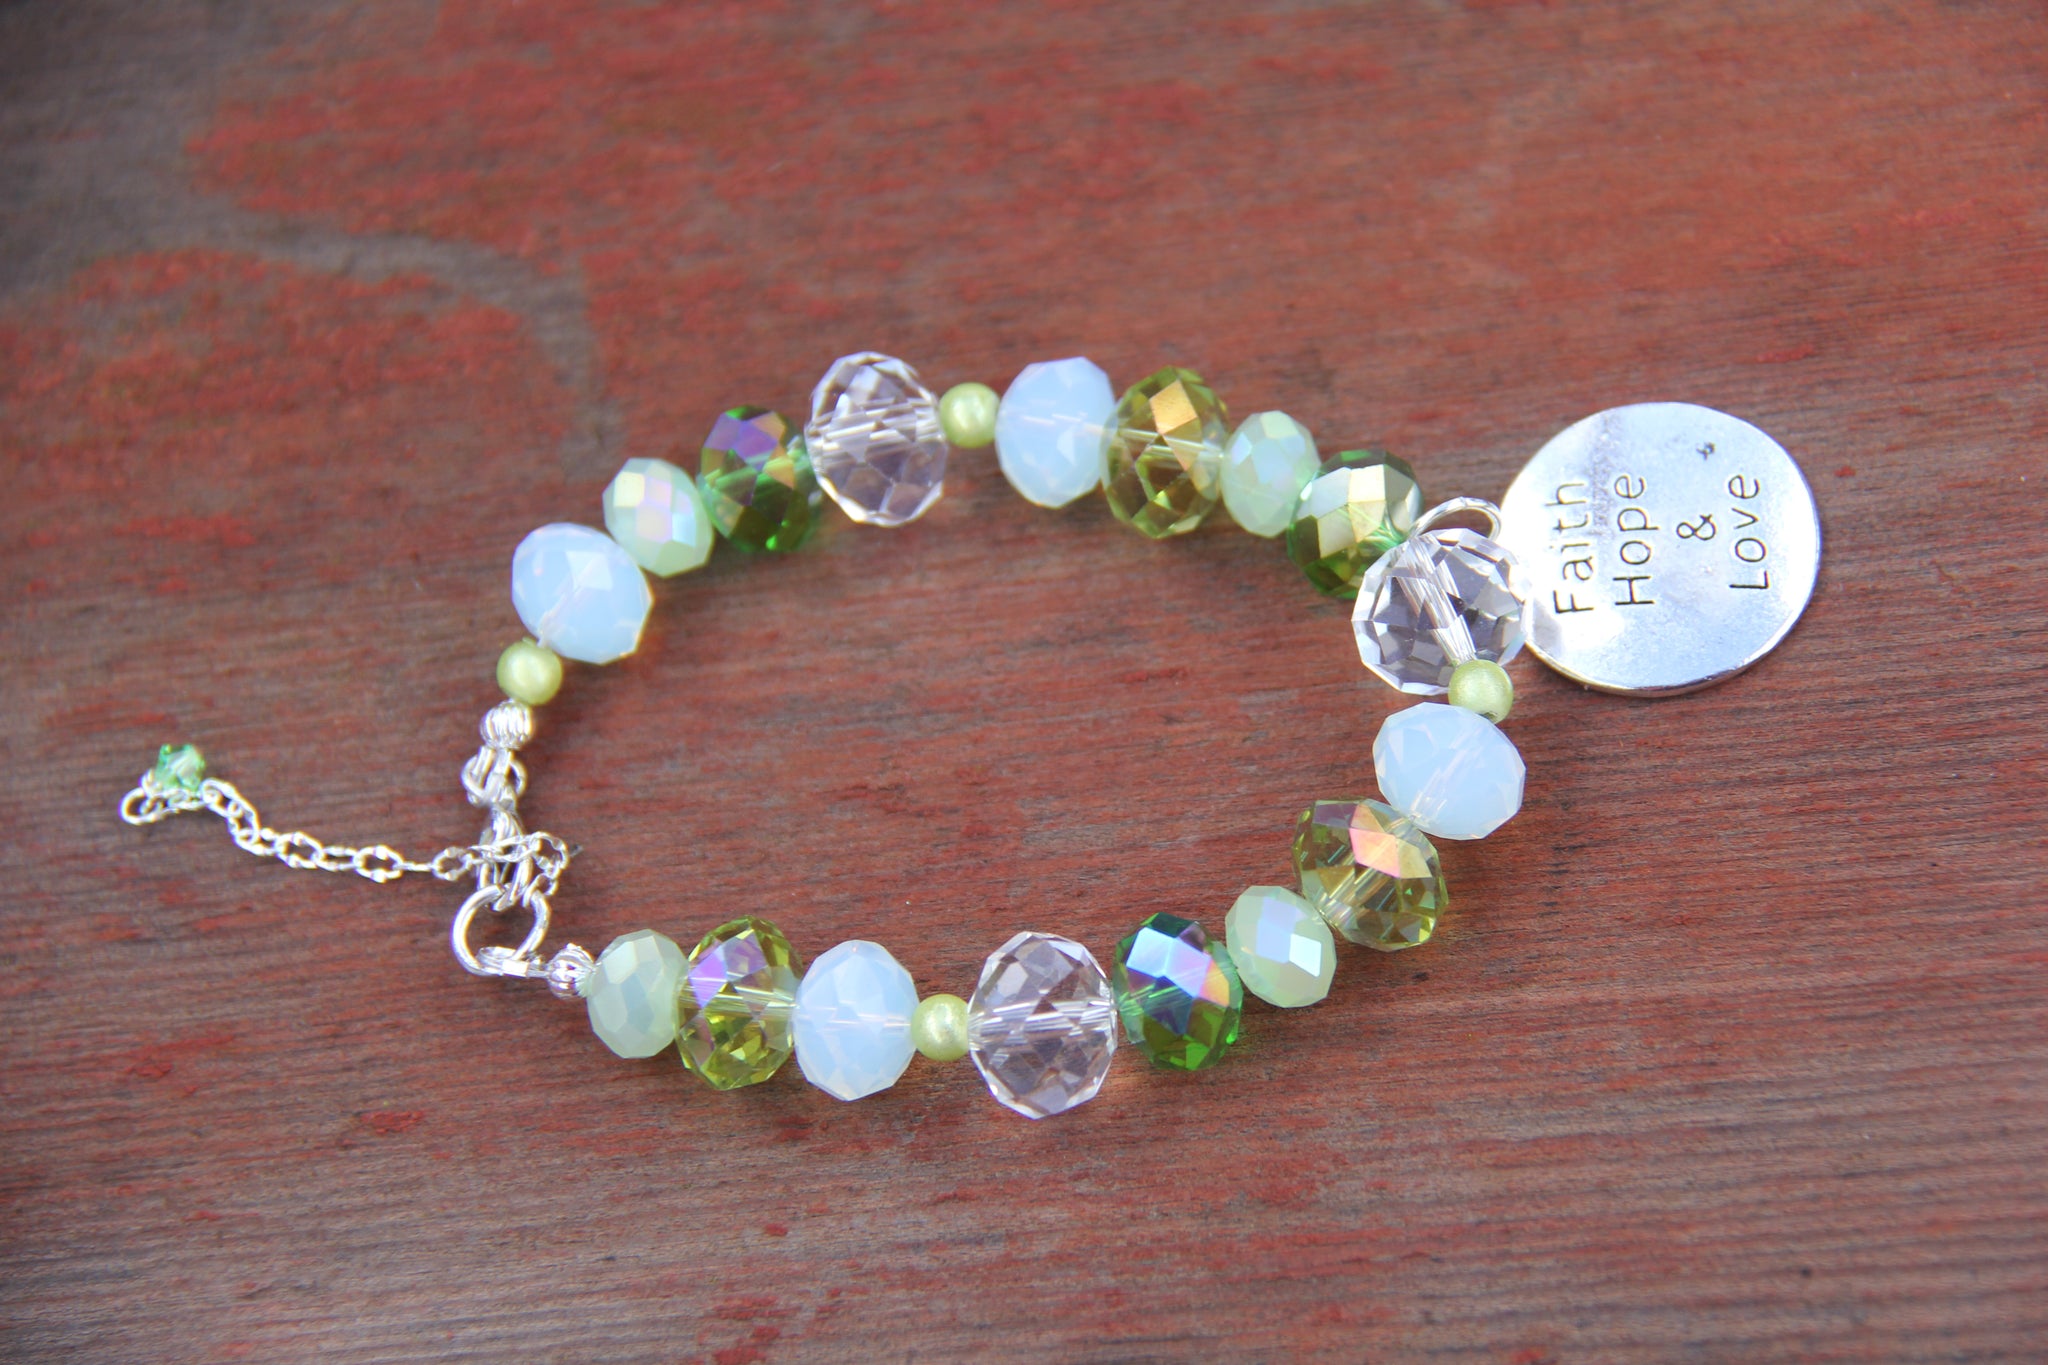 Faith, Hope & Love silver charm on a green glass beads bracelet